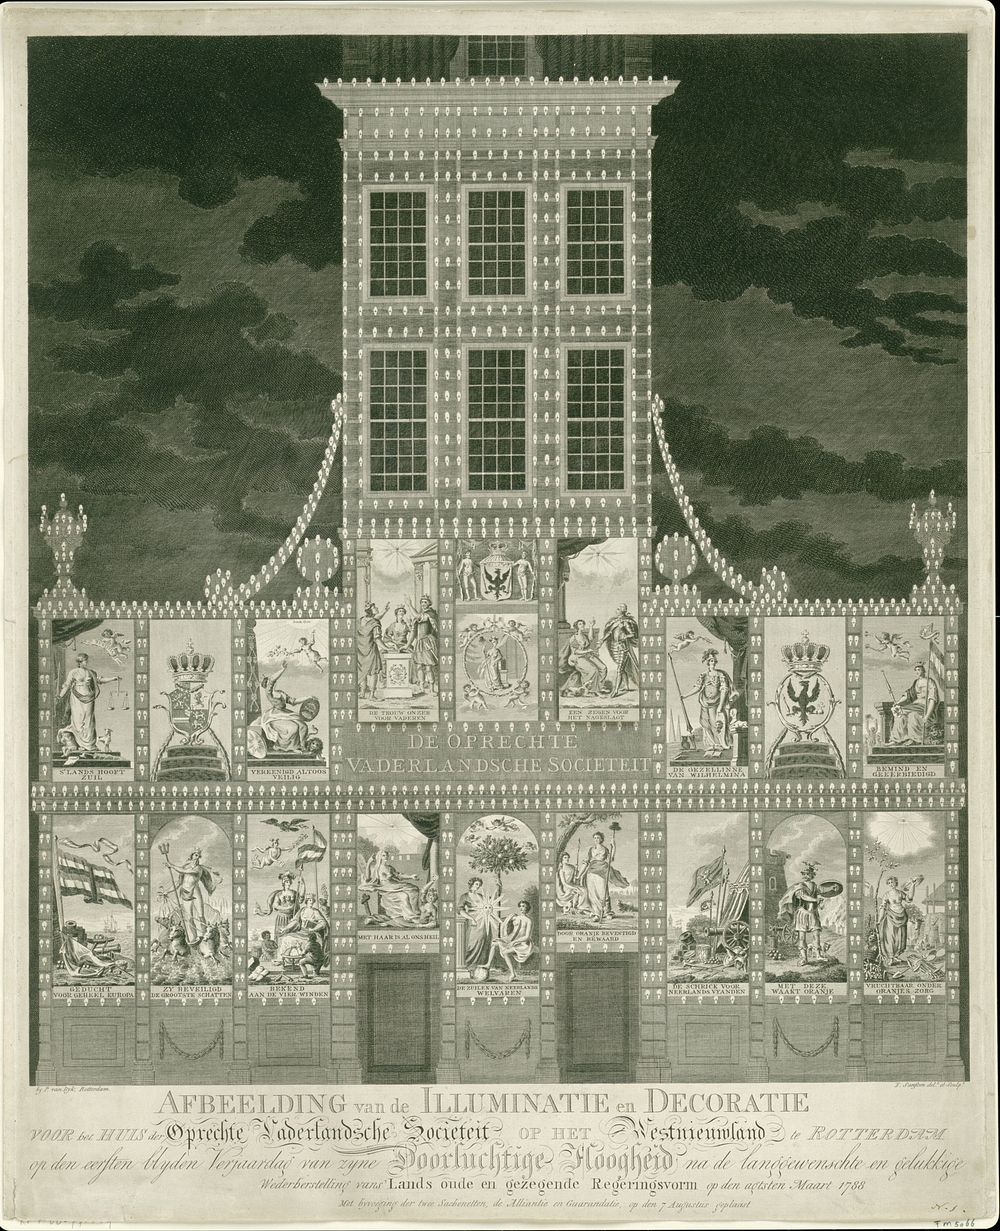 Illuminatie van het pand van de Oprechte Vaderlandsche Sociëteit op het Westnieuwland te Rotterdam, 1788 (1788) by…